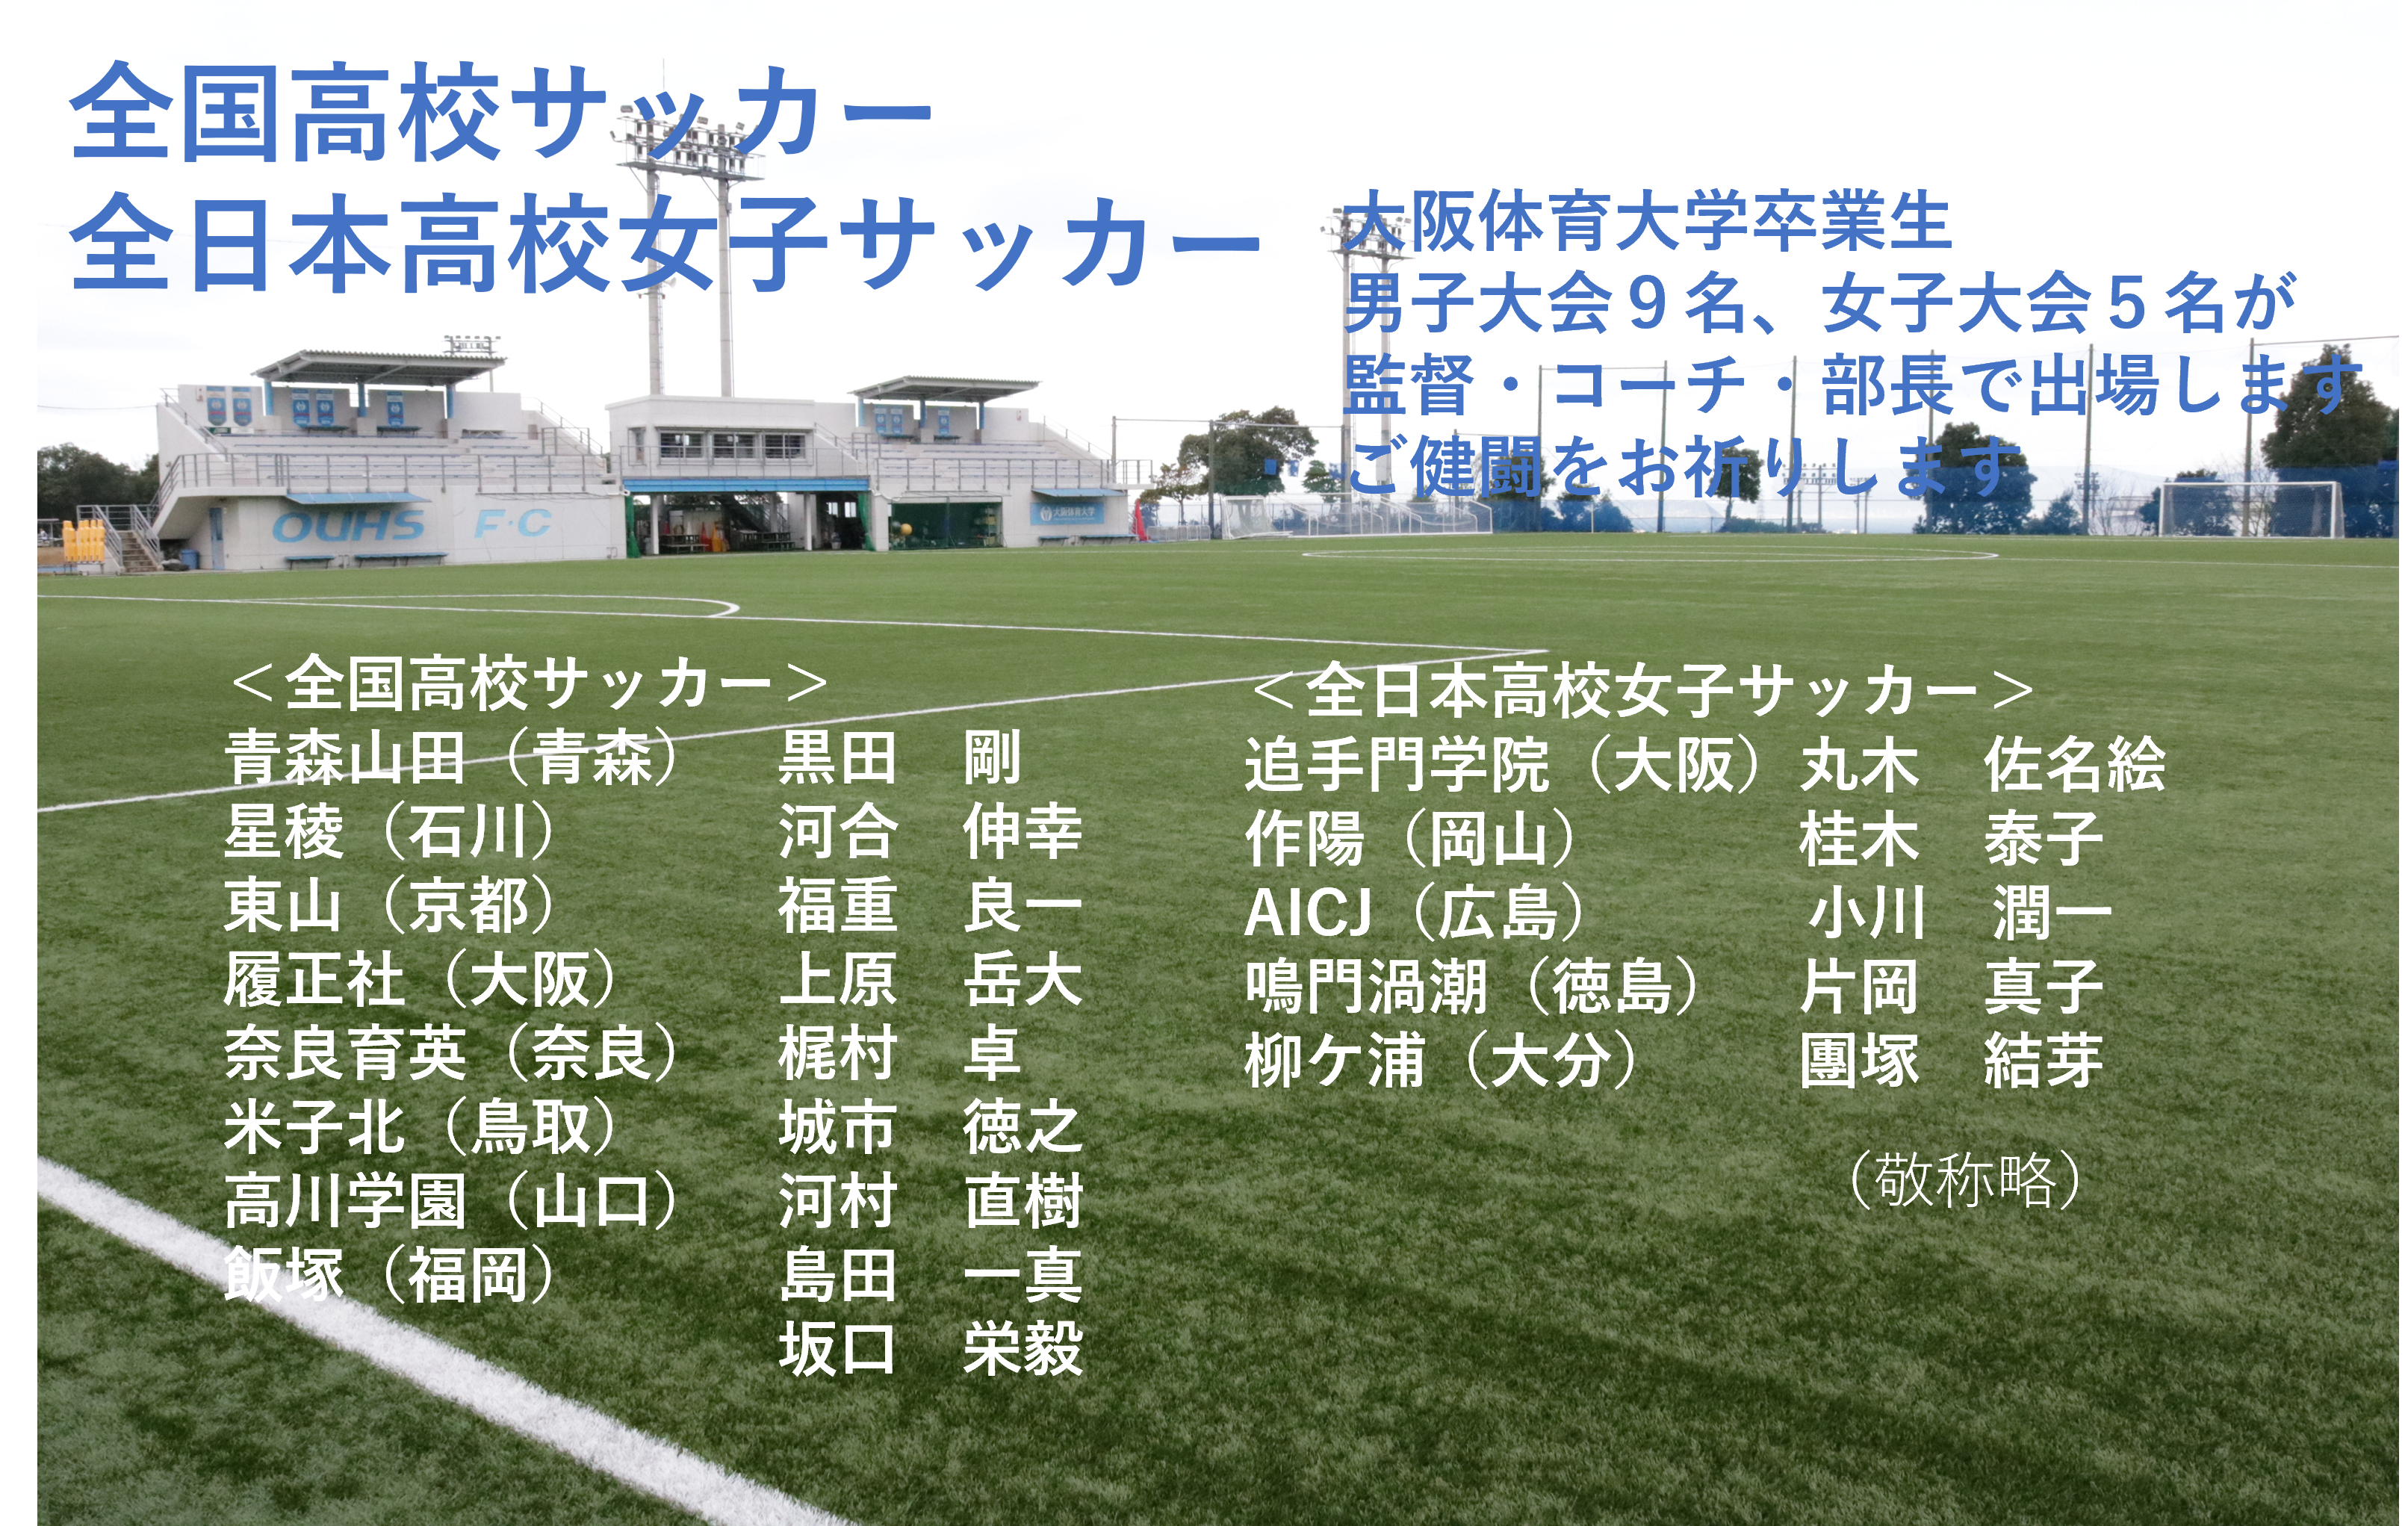 全国高校サッカーに本学卒業生９名 全日本高校女子サッカーに５名が監督 コーチ 部長として出場します 大阪体育大学